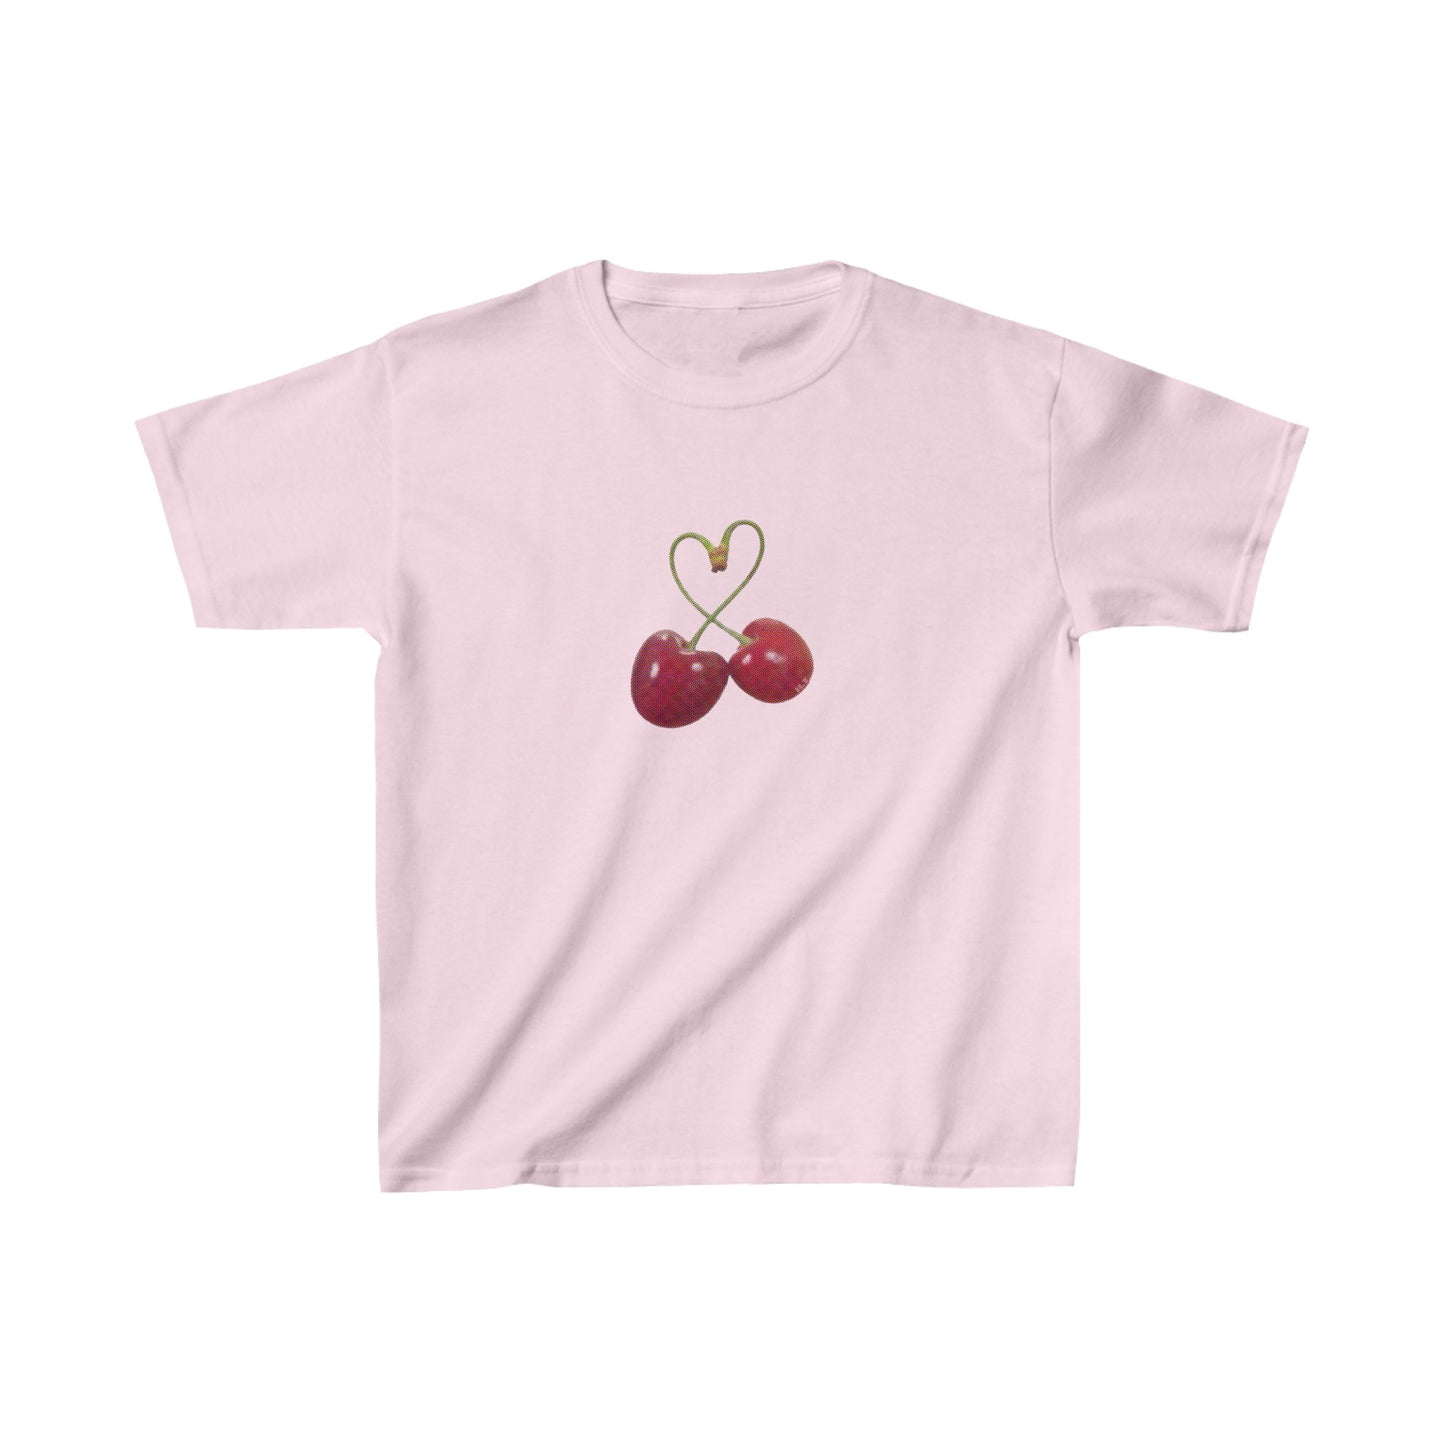 "cherry heart" Baby Tee